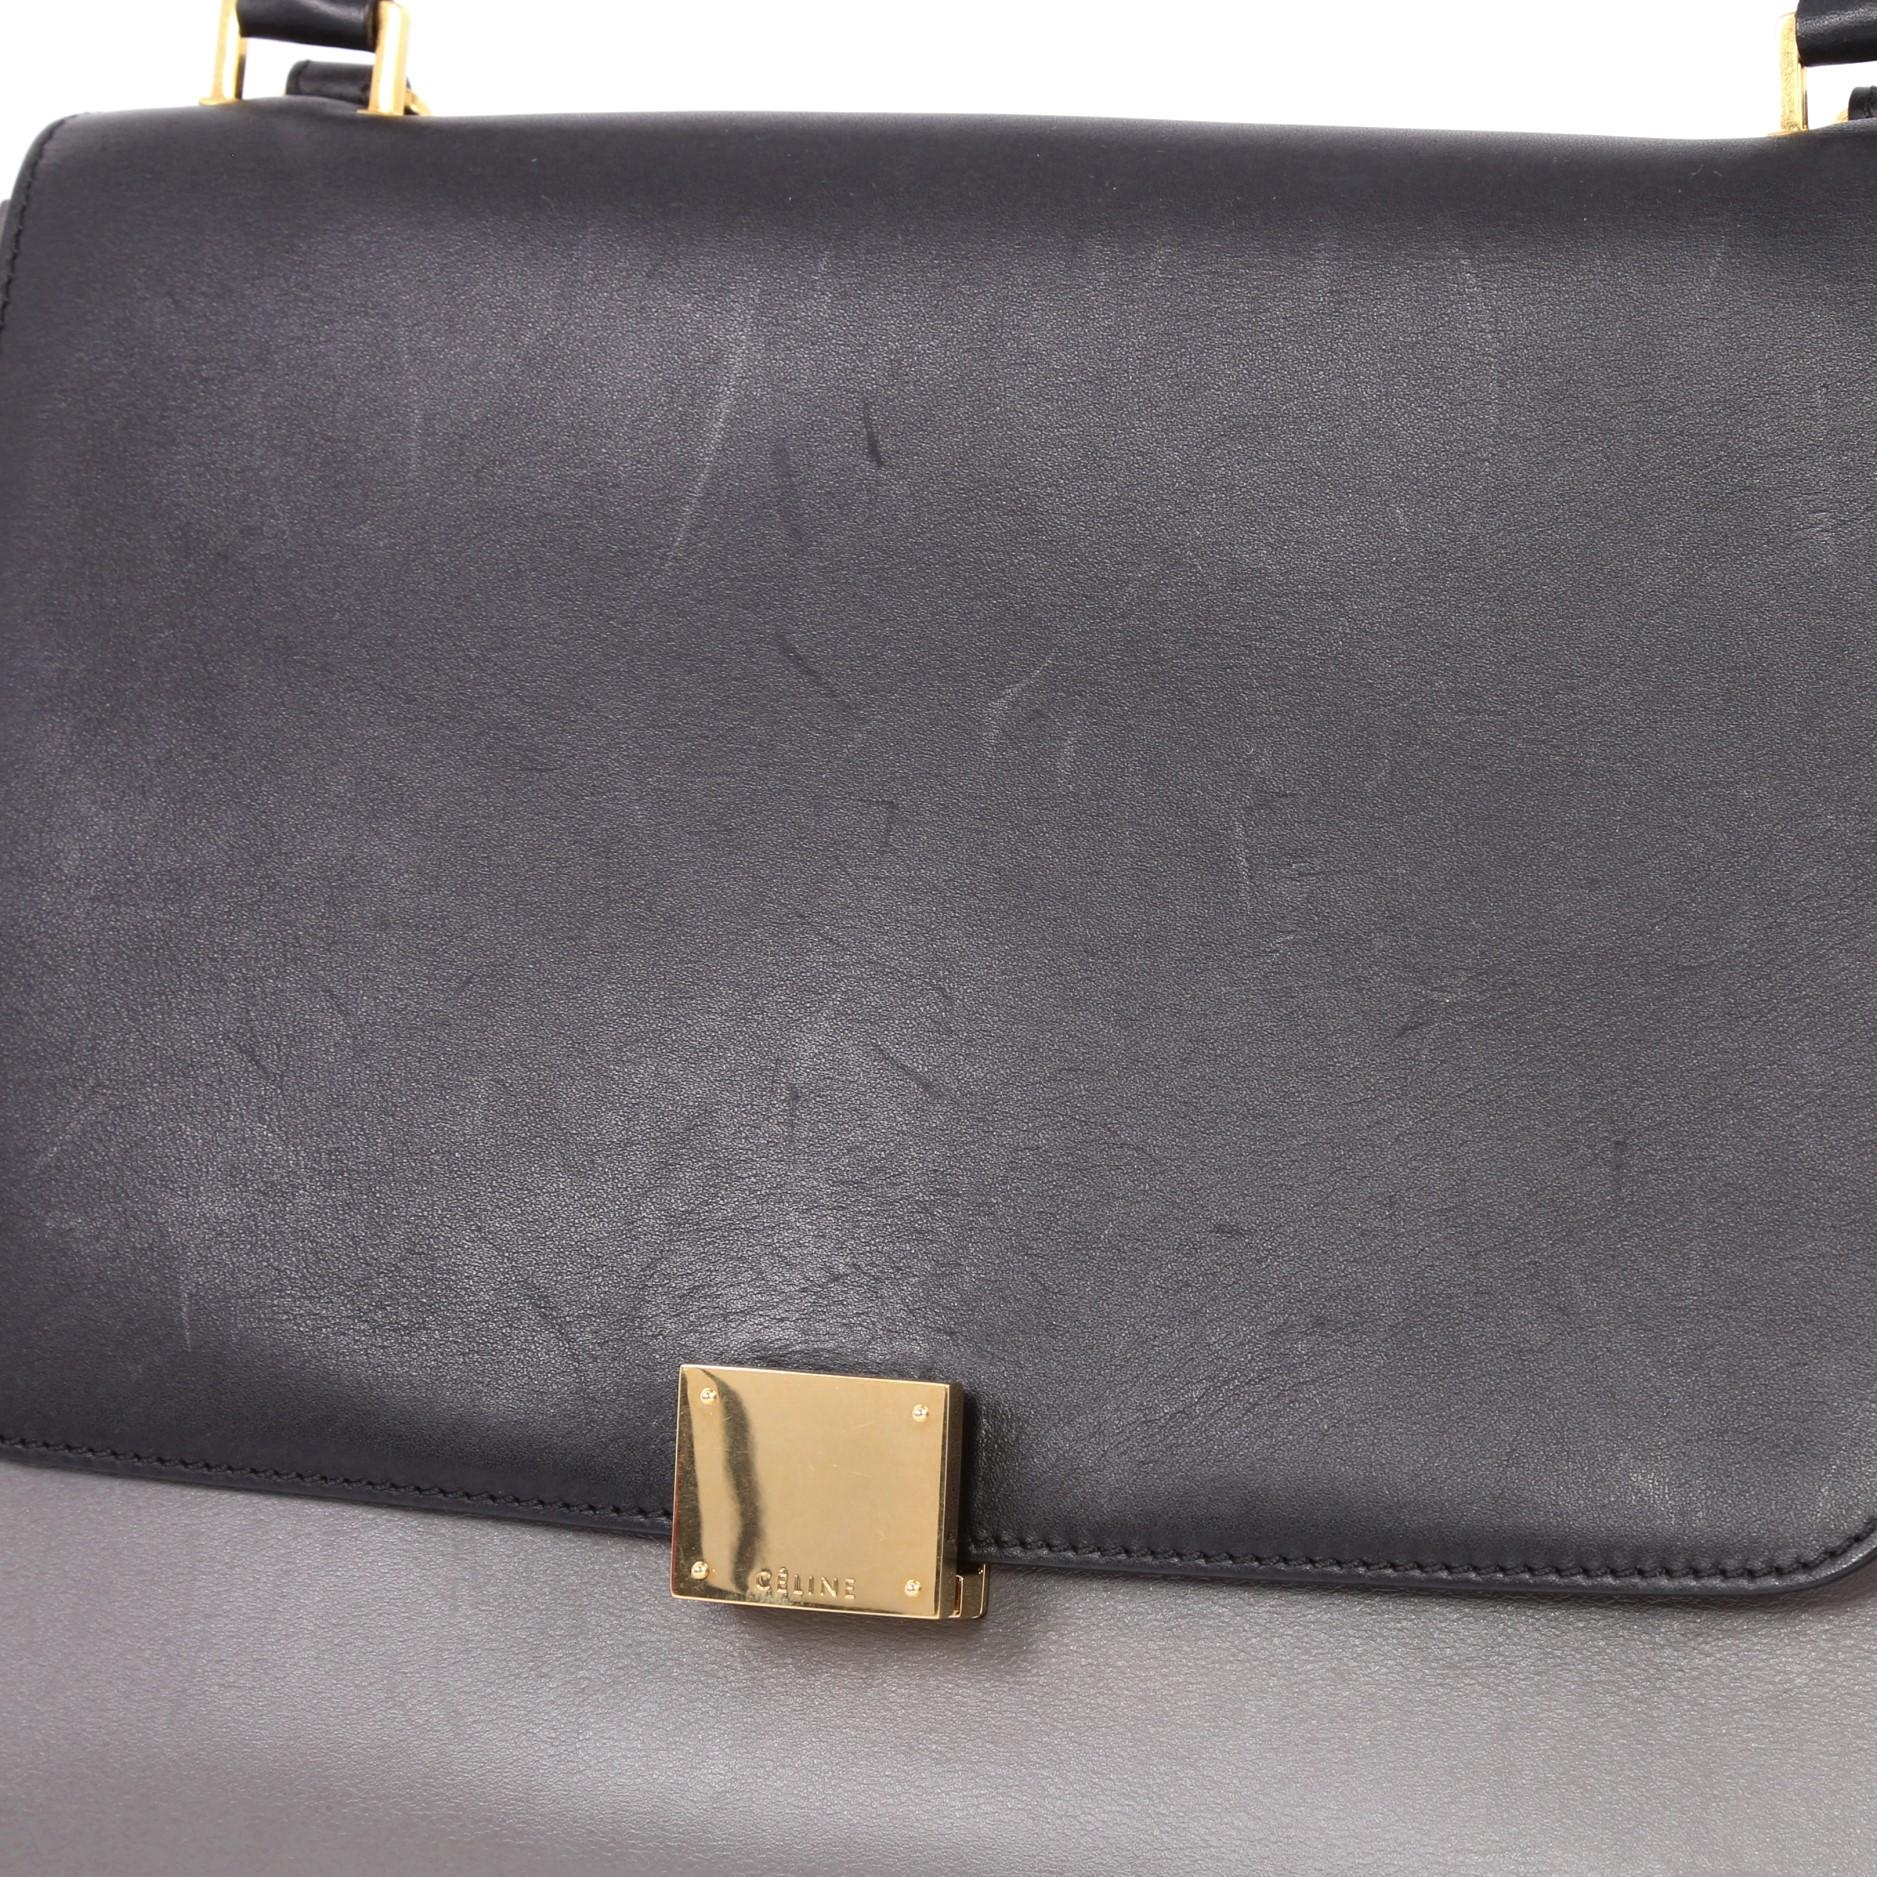 Celine Tricolor Trapeze Handbag Leather Medium 2